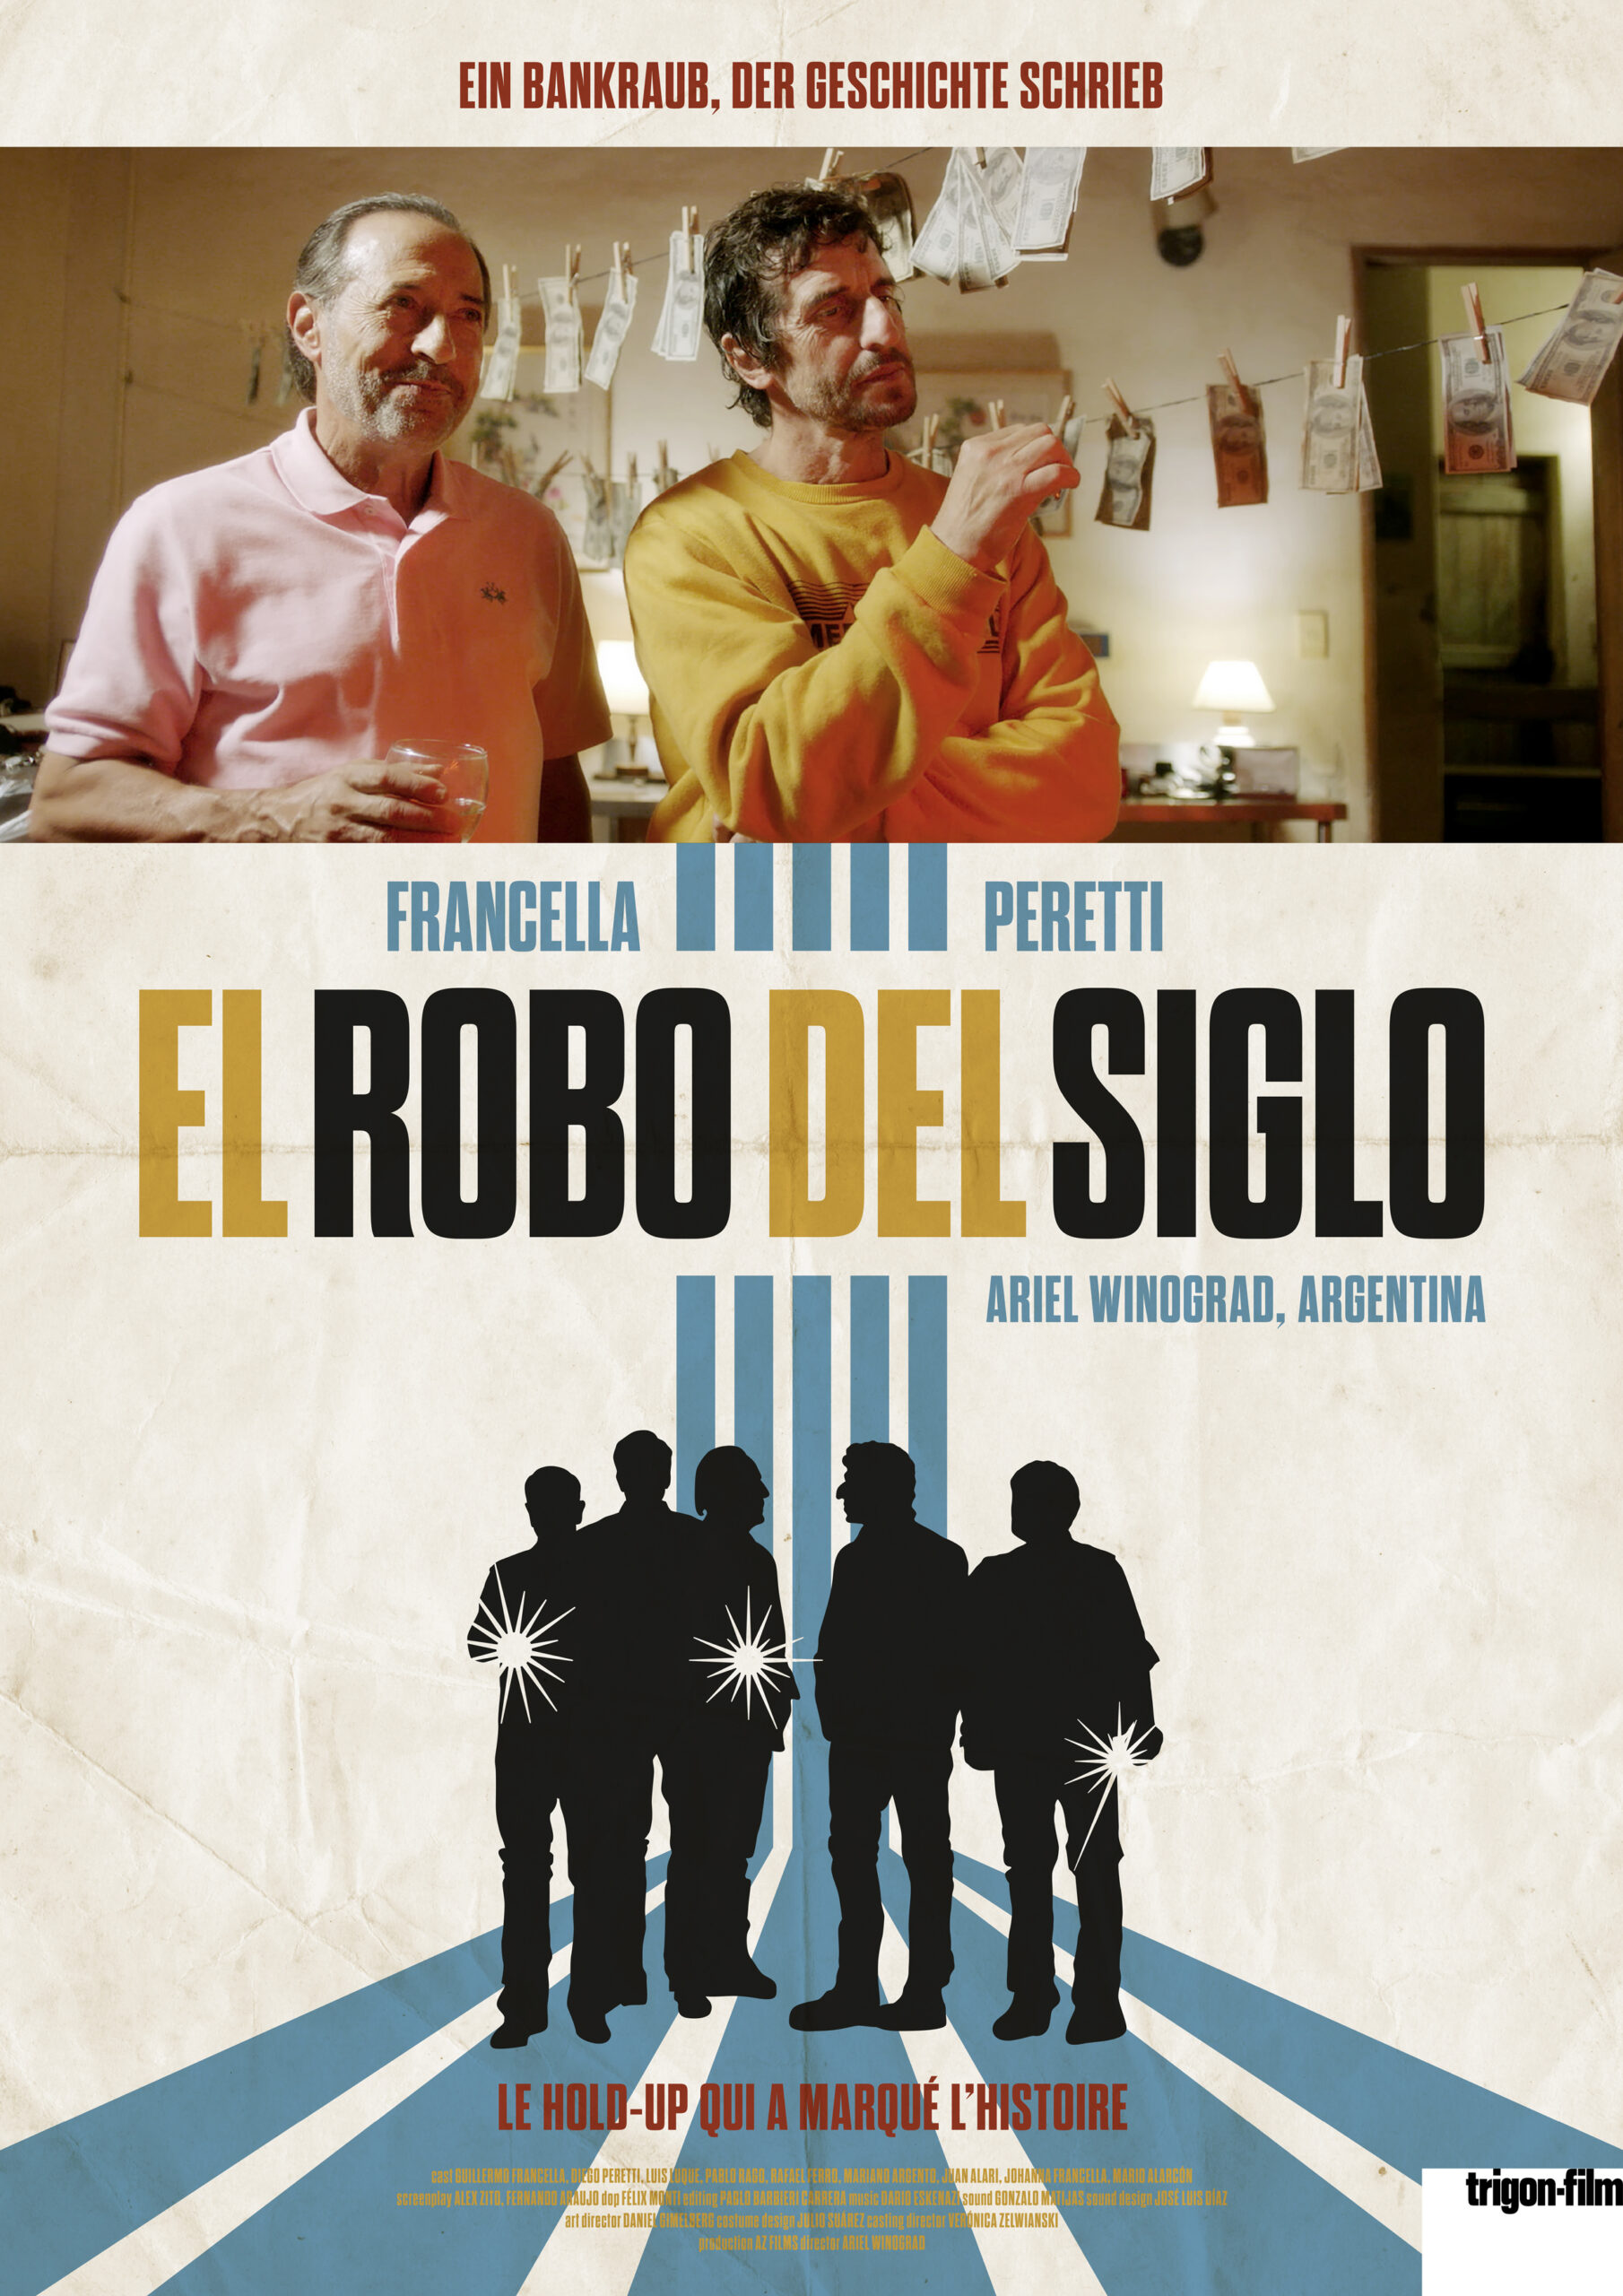 ARGENTINIEN: EL ROBO DEL SIGLO